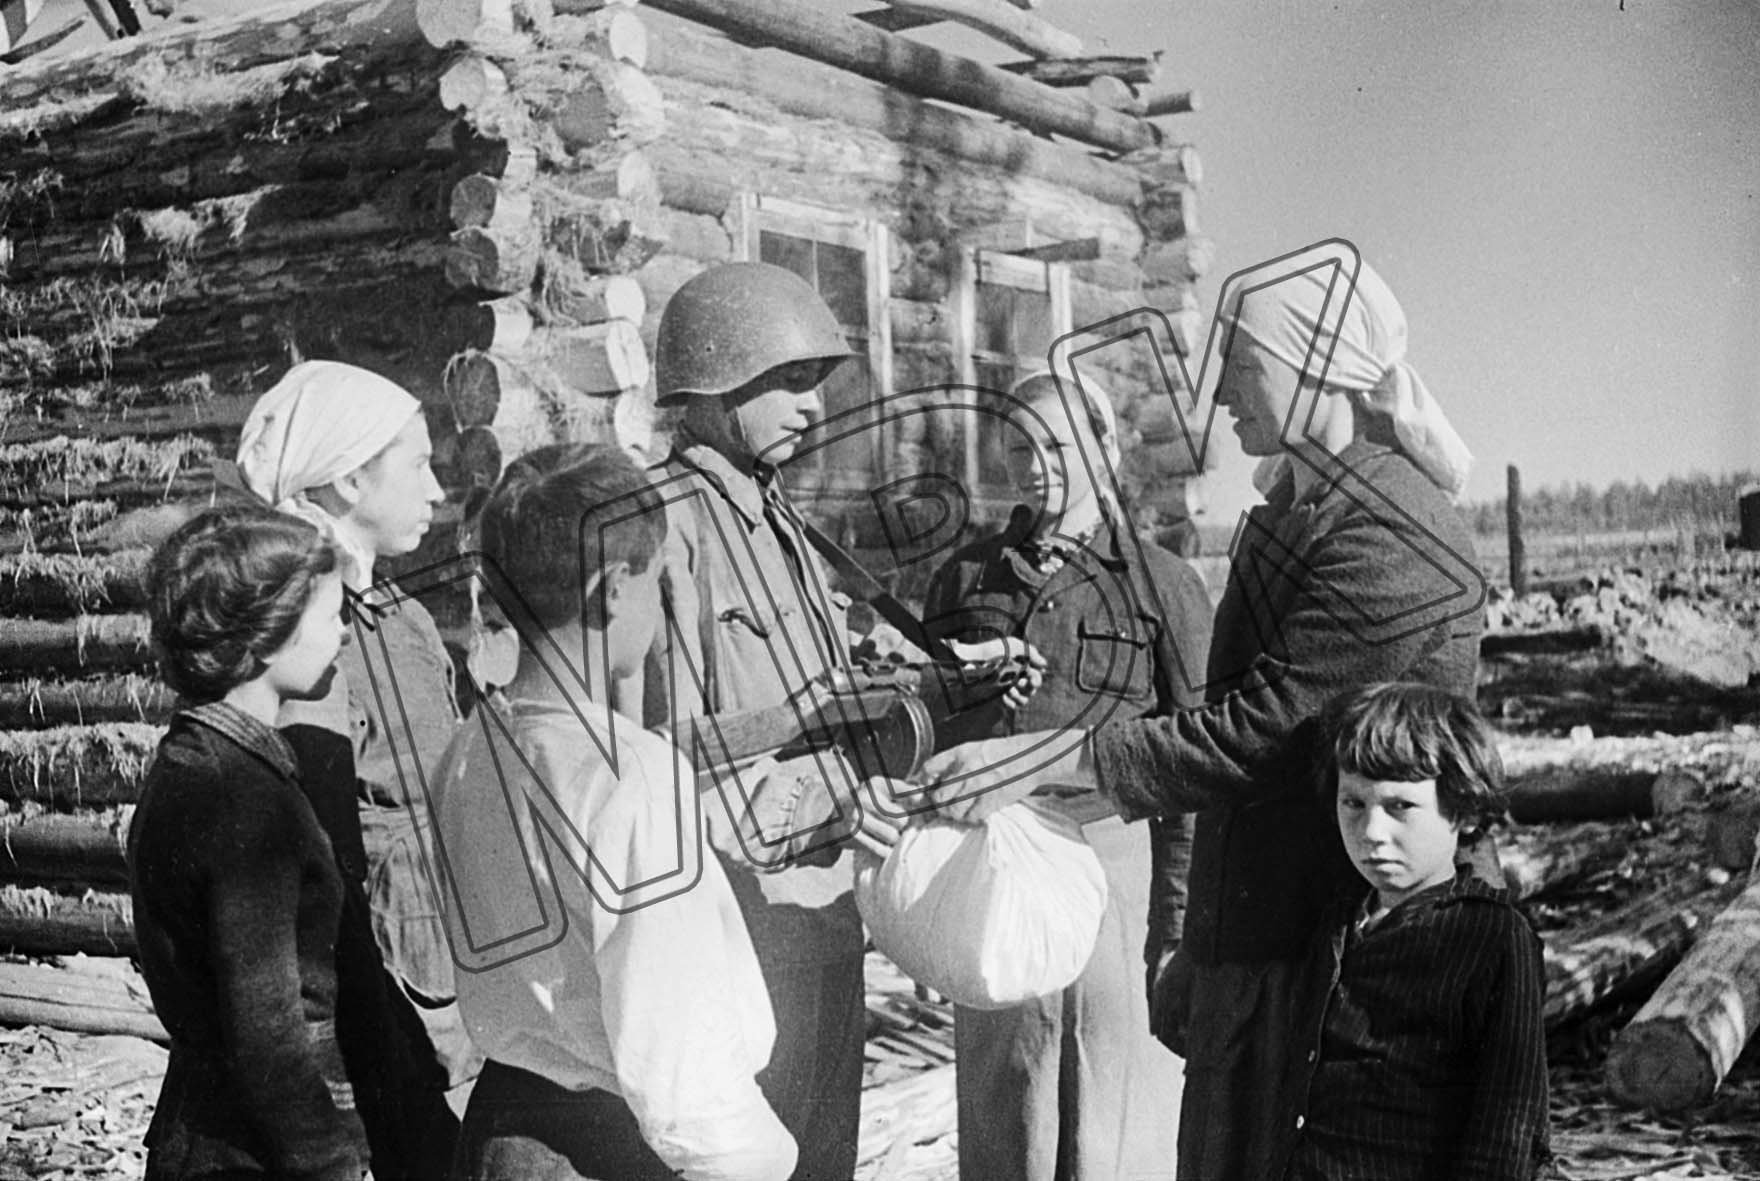 Fotografie: Ein Rotarmist verabschiedet sich von der Familie, Gebiet Smolensk, September 1942 (Museum Berlin-Karlshorst RR-P)